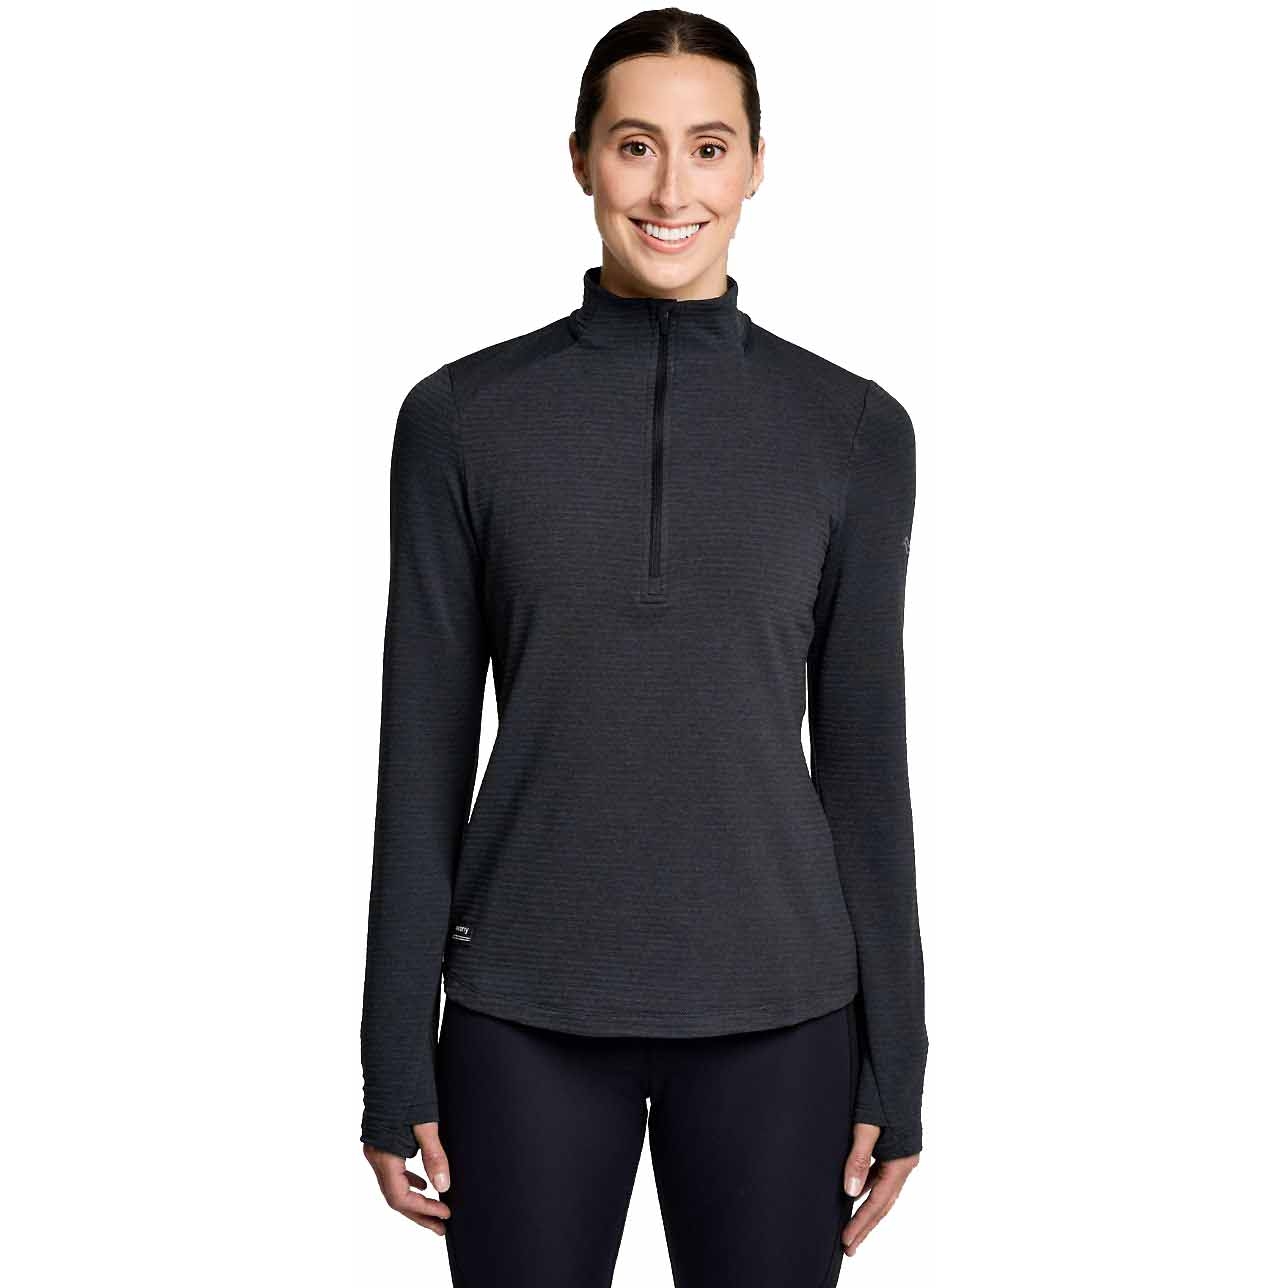 Produktbild von Saucony Triumph 3D 1/2 Zip Damen Langarm-Shirt - schwarz heather